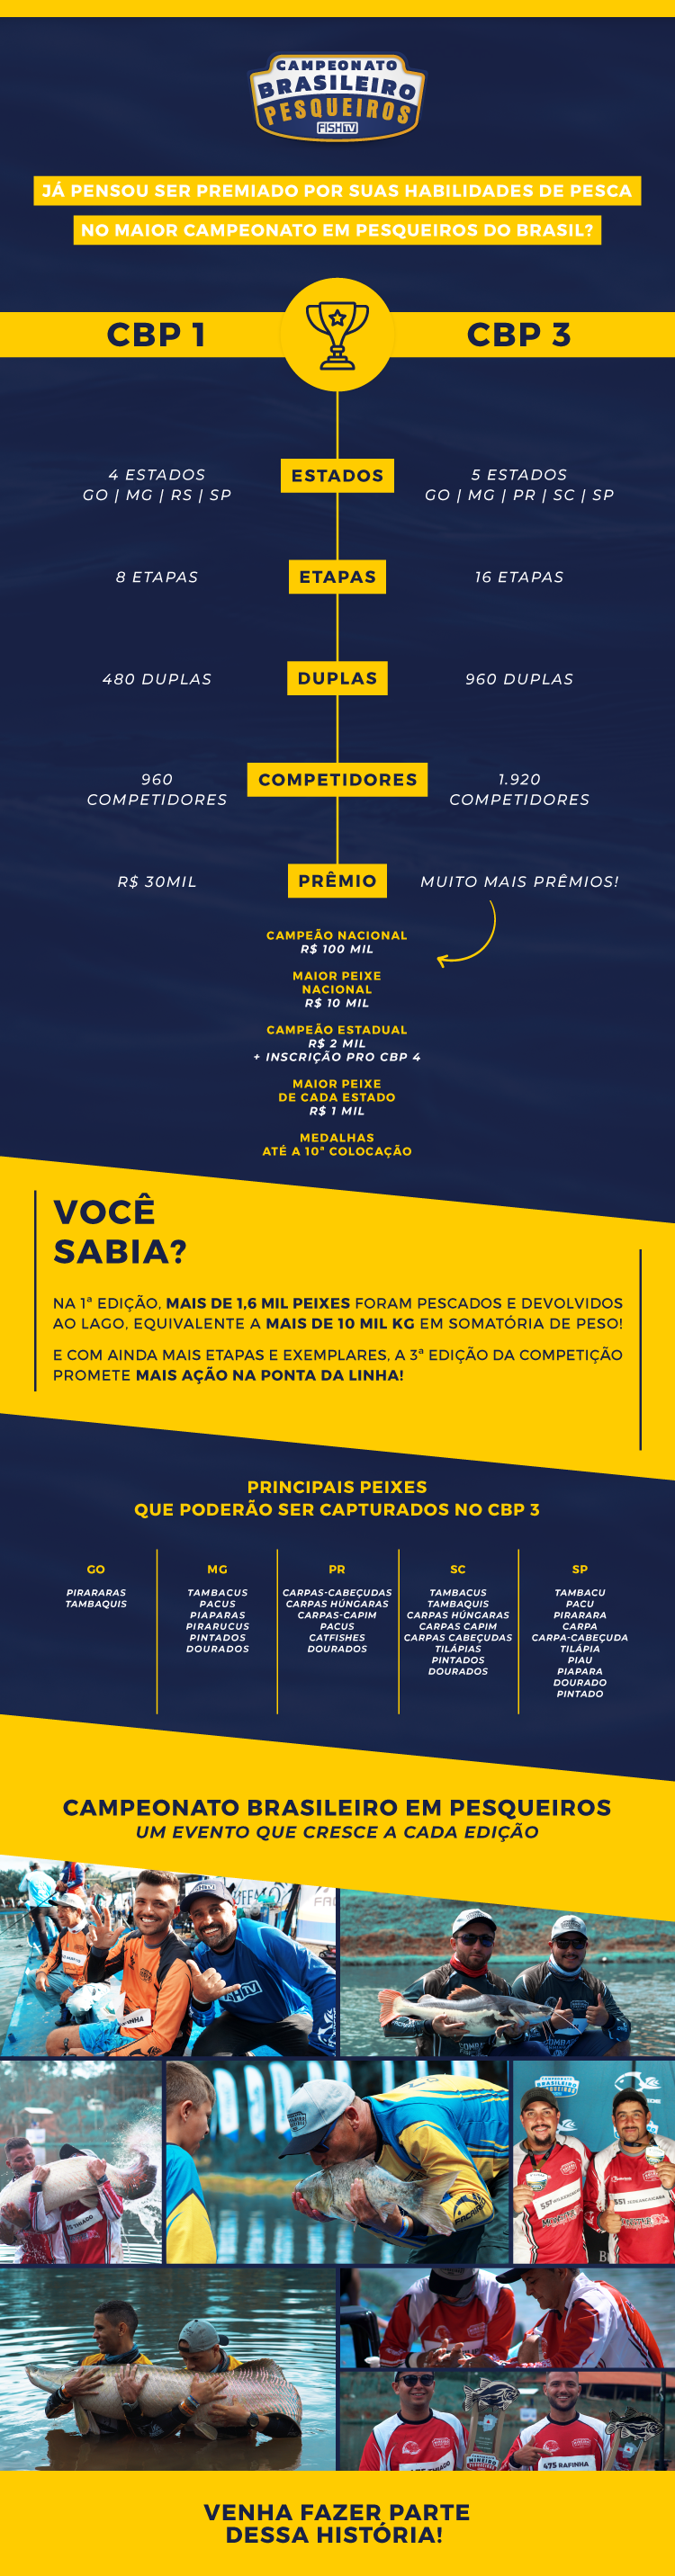 Infografico Campeonato Brasileiro em Pesqueiros